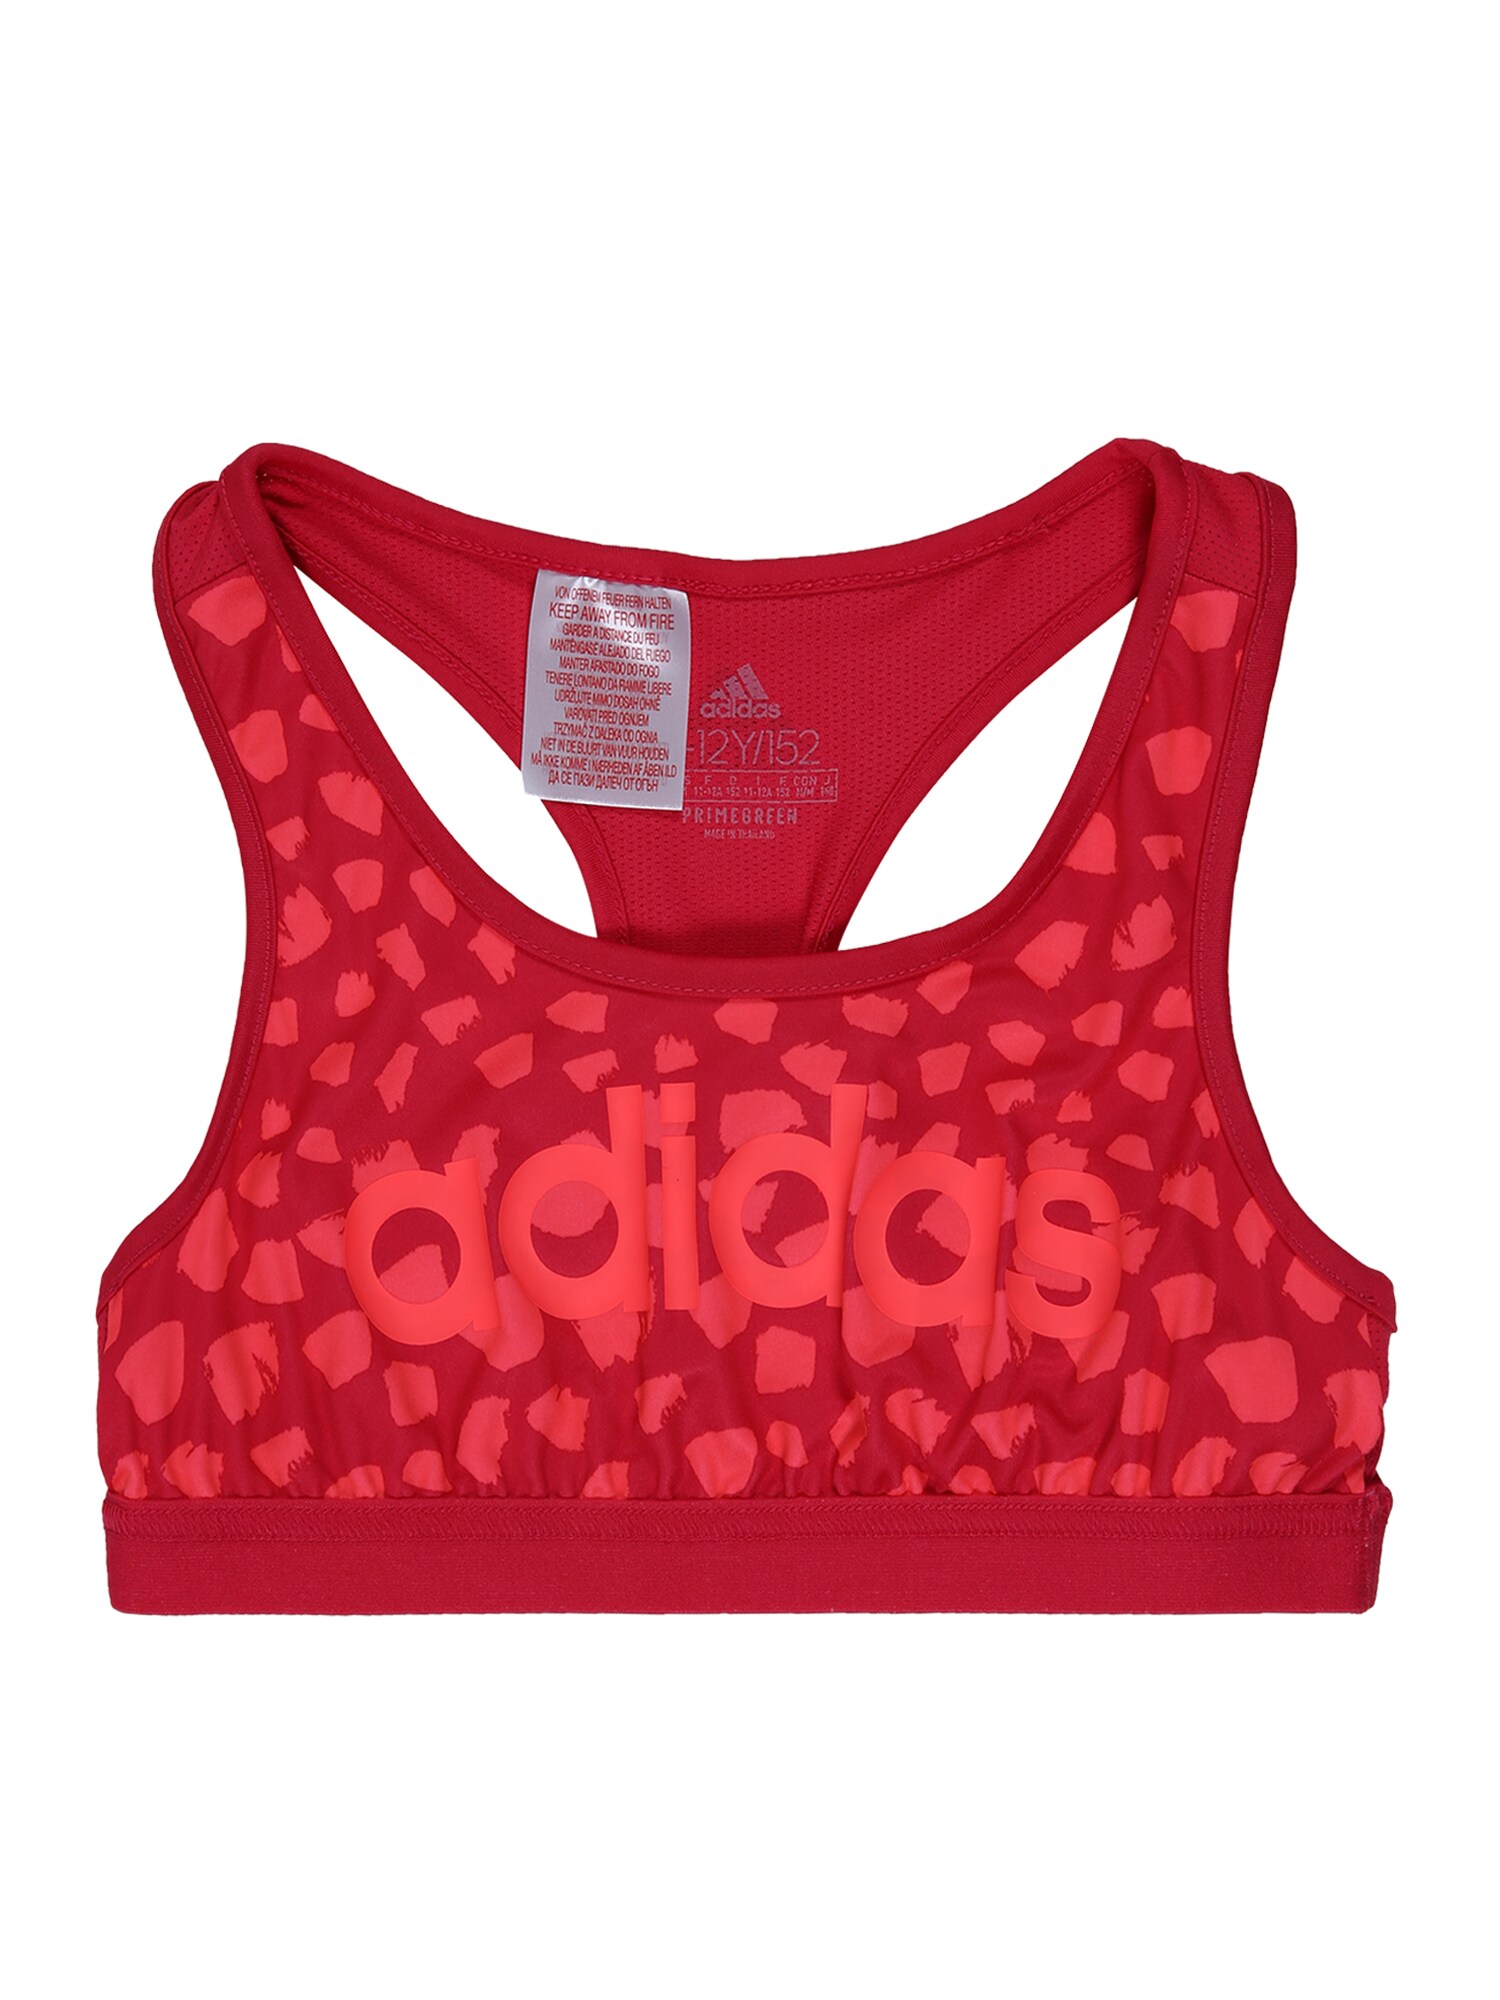 ADIDAS PERFORMANCE Sportiniai marškinėliai be rankovių  karmino raudona / šviesiai raudona